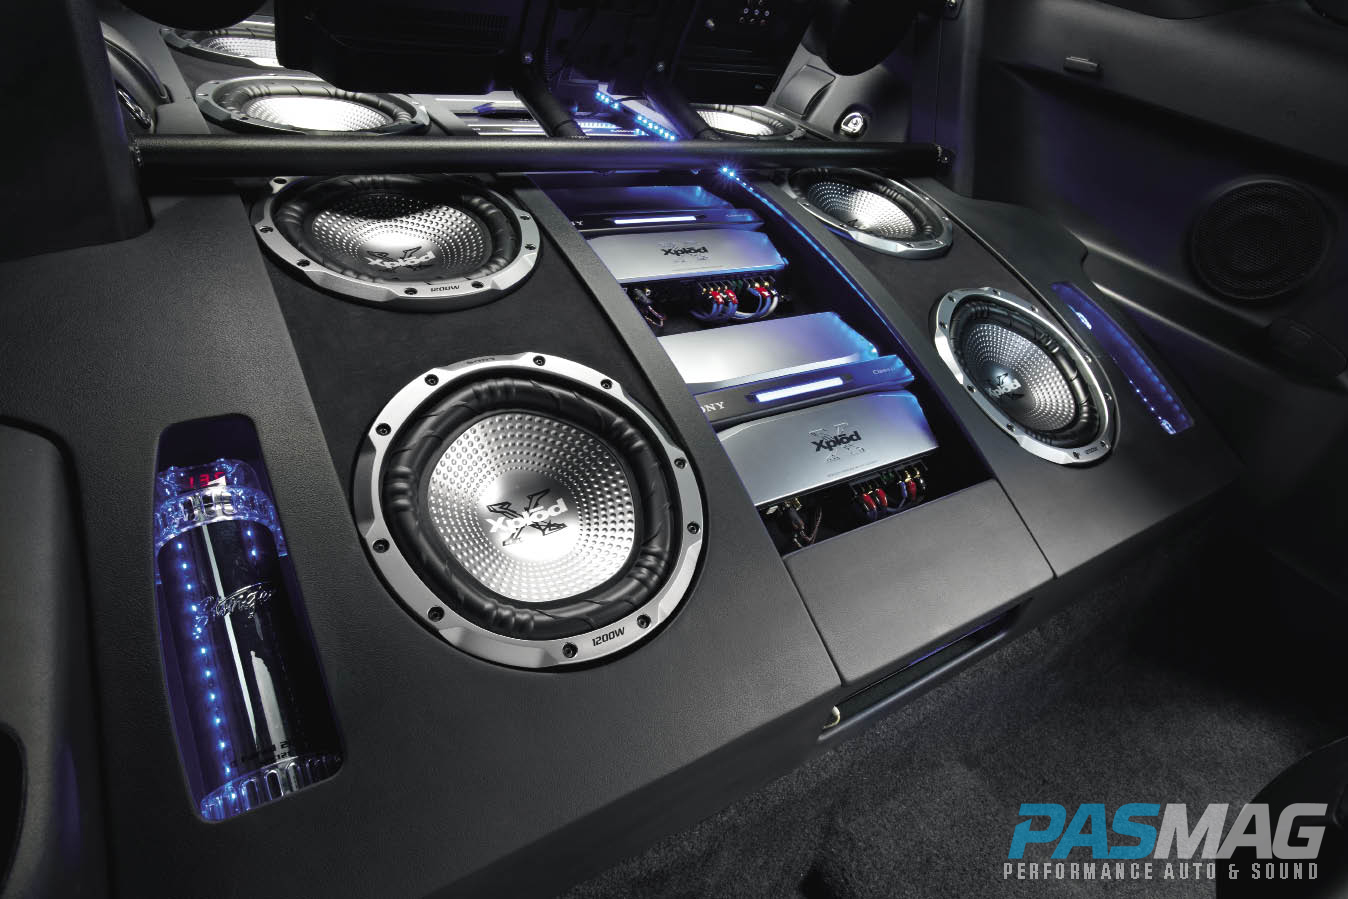 Бюджетный качественный звук. Car Audio System 60wx4. Car Audio в Bentley Continental 2008 Speakers. Sony car Audio System. Сабвуфер GB car Audio System.